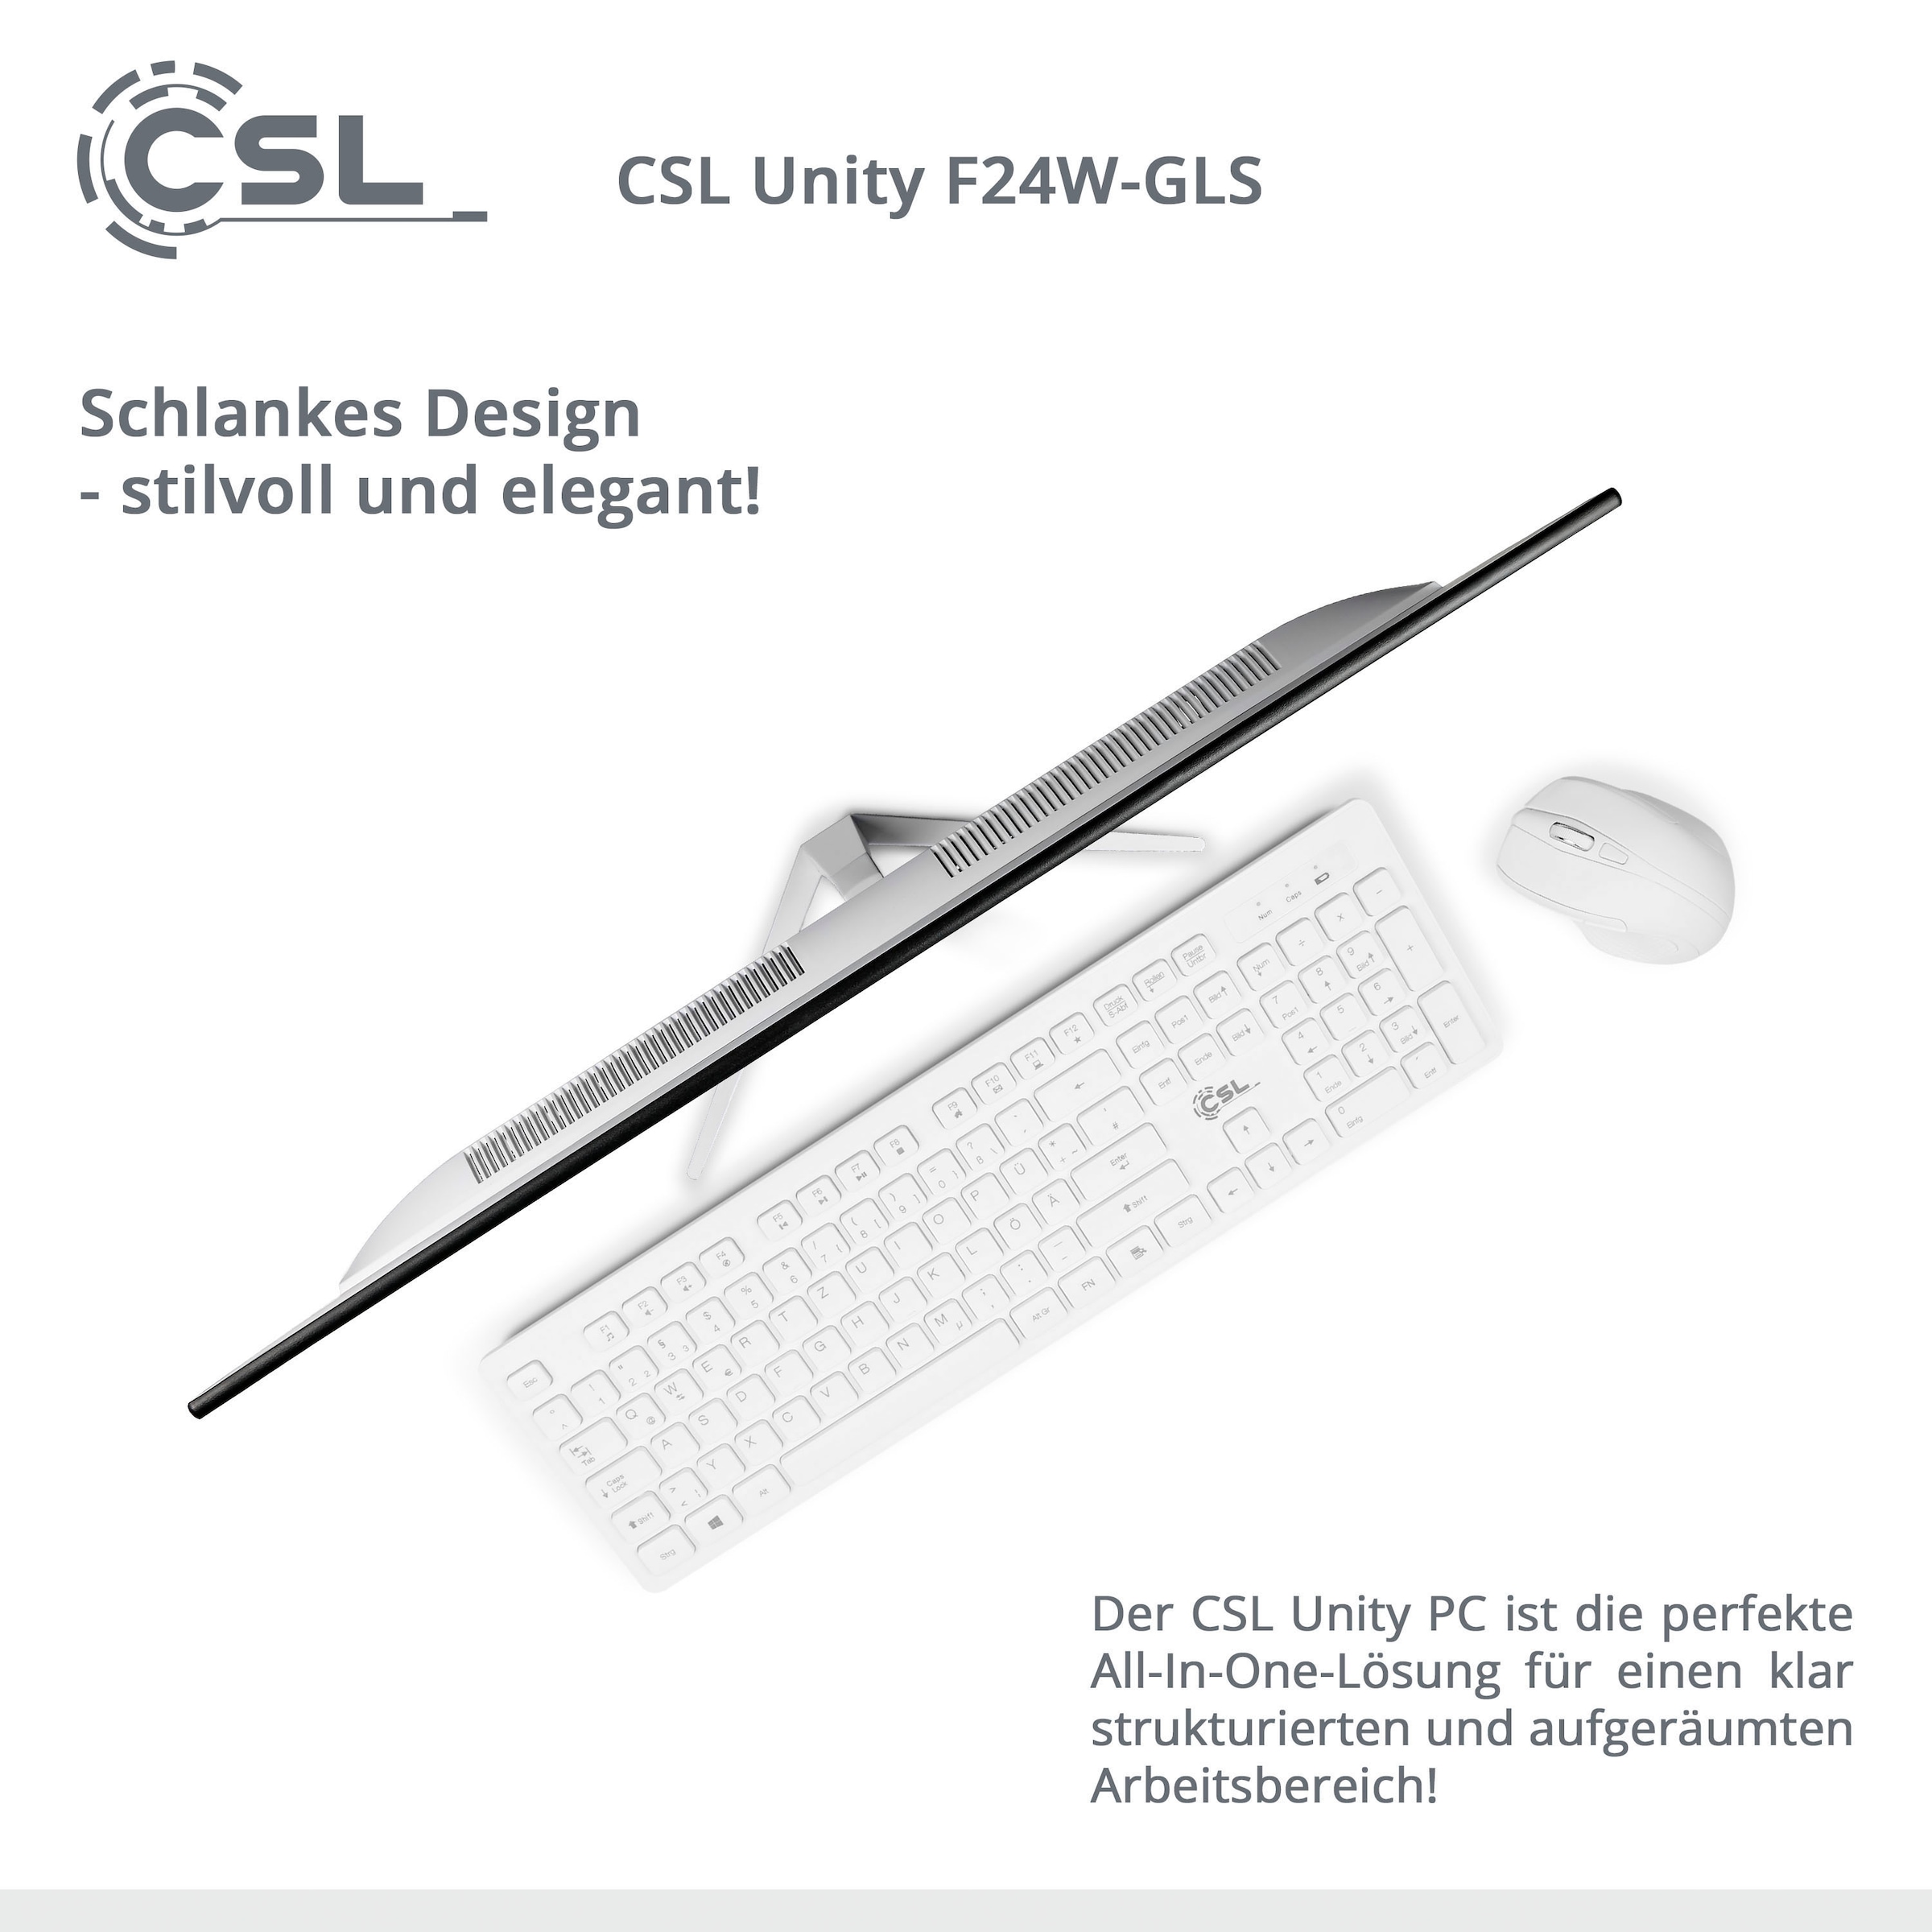 CSL 10 PC All-in-One Windows mit F24-GLS »Unity OTTO bei Home« jetzt